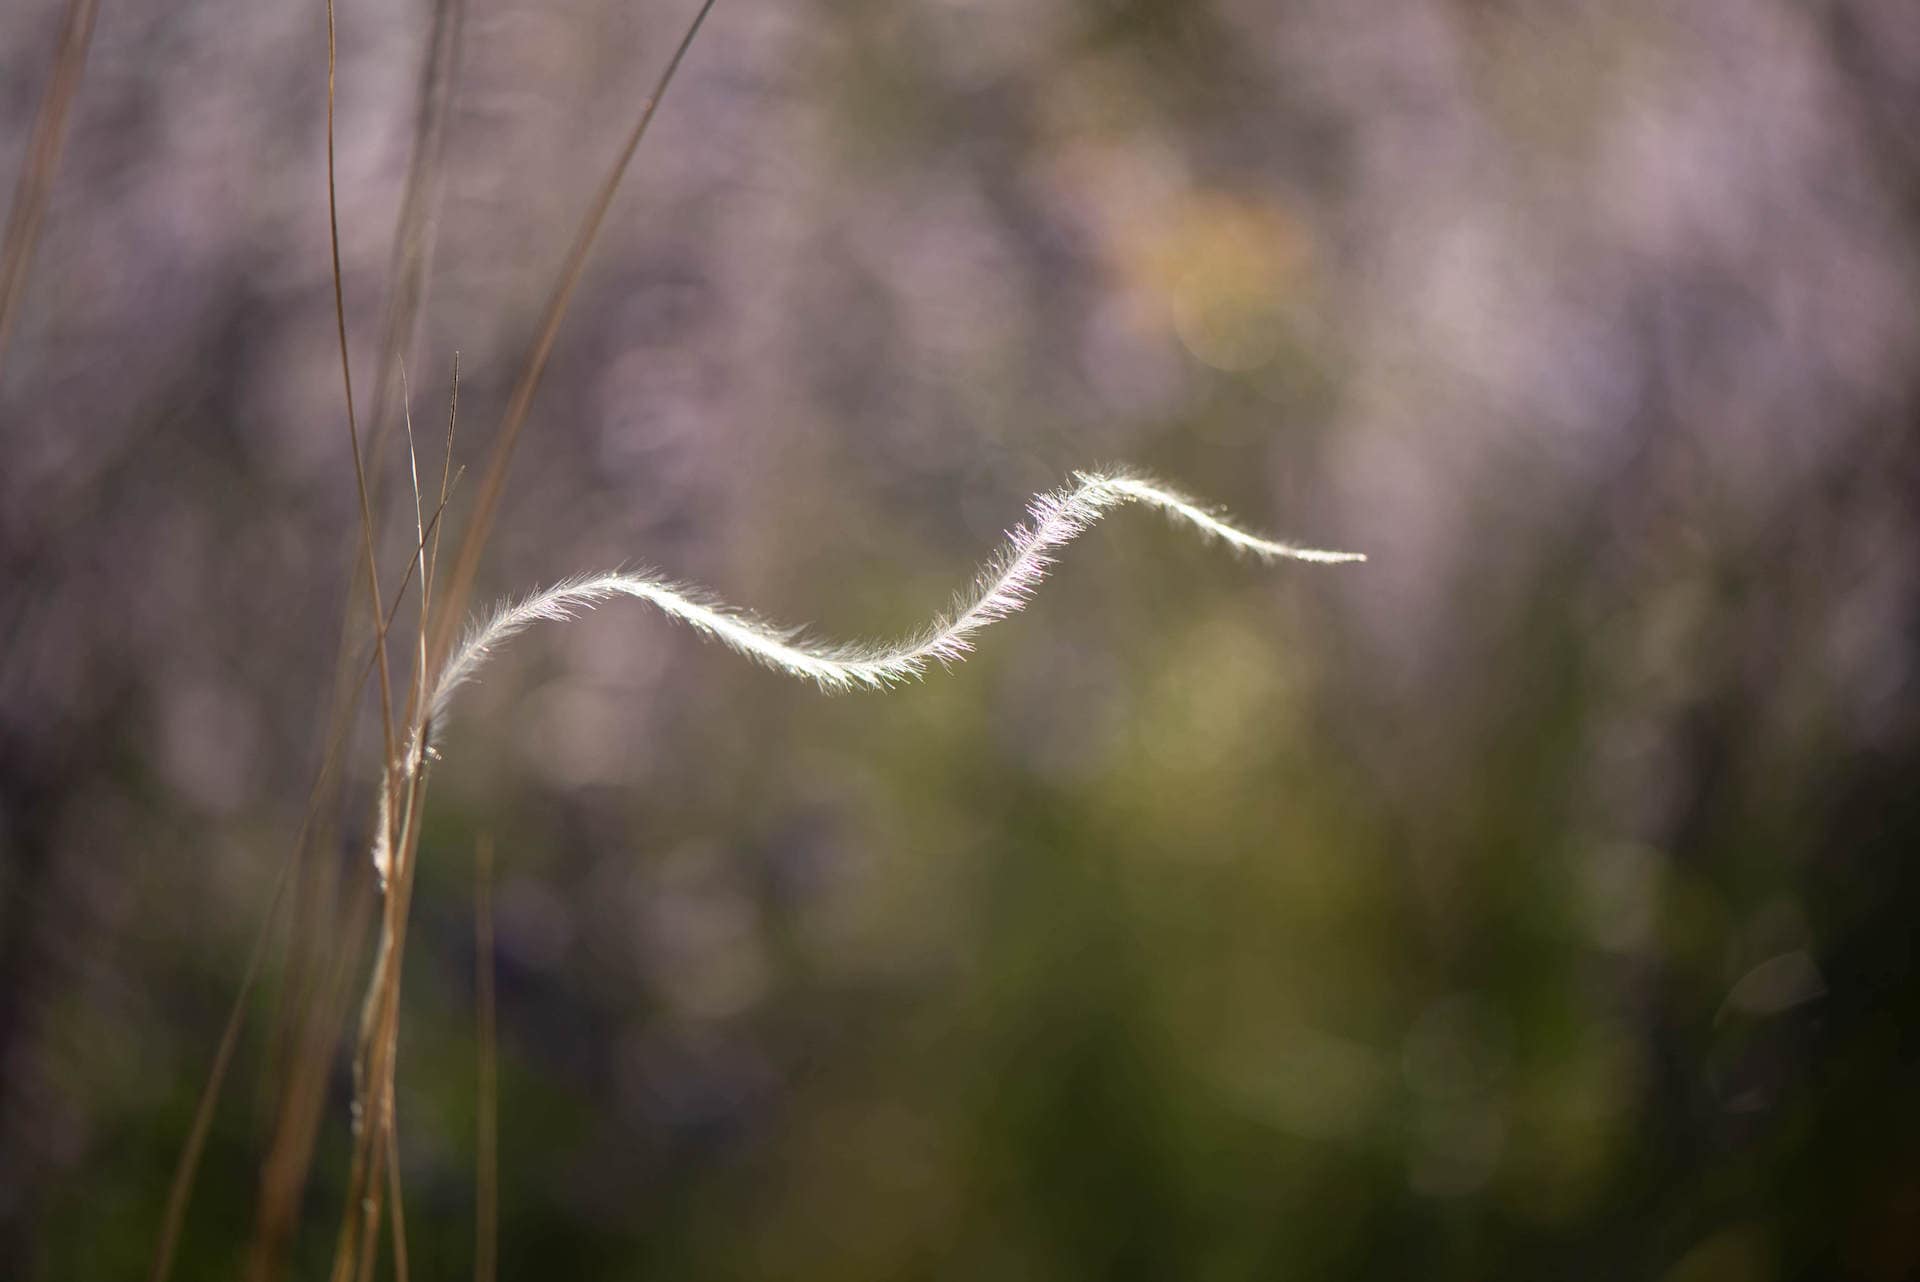 Grashalm auf einer Blumenwiese